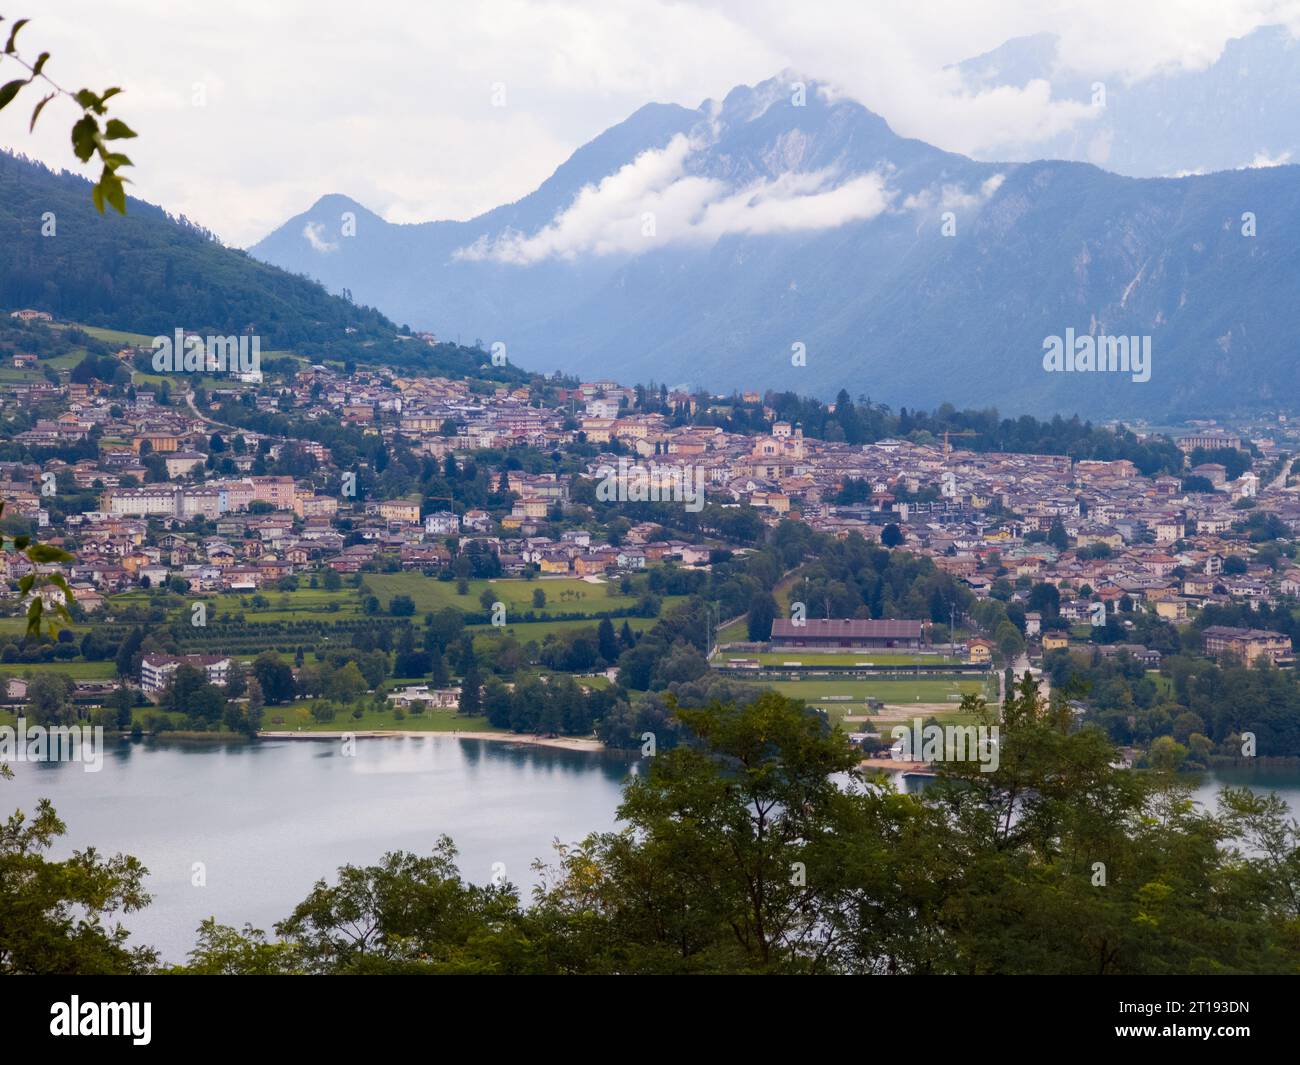 Veduta aerea del Lago di Caldonazzo nel nord Italia. Sullo sfondo gli alberi, le Alpi, il cielo blu. Riflesso delle montagne nell'acqua. Stagione autunnale. Multi-col Foto Stock